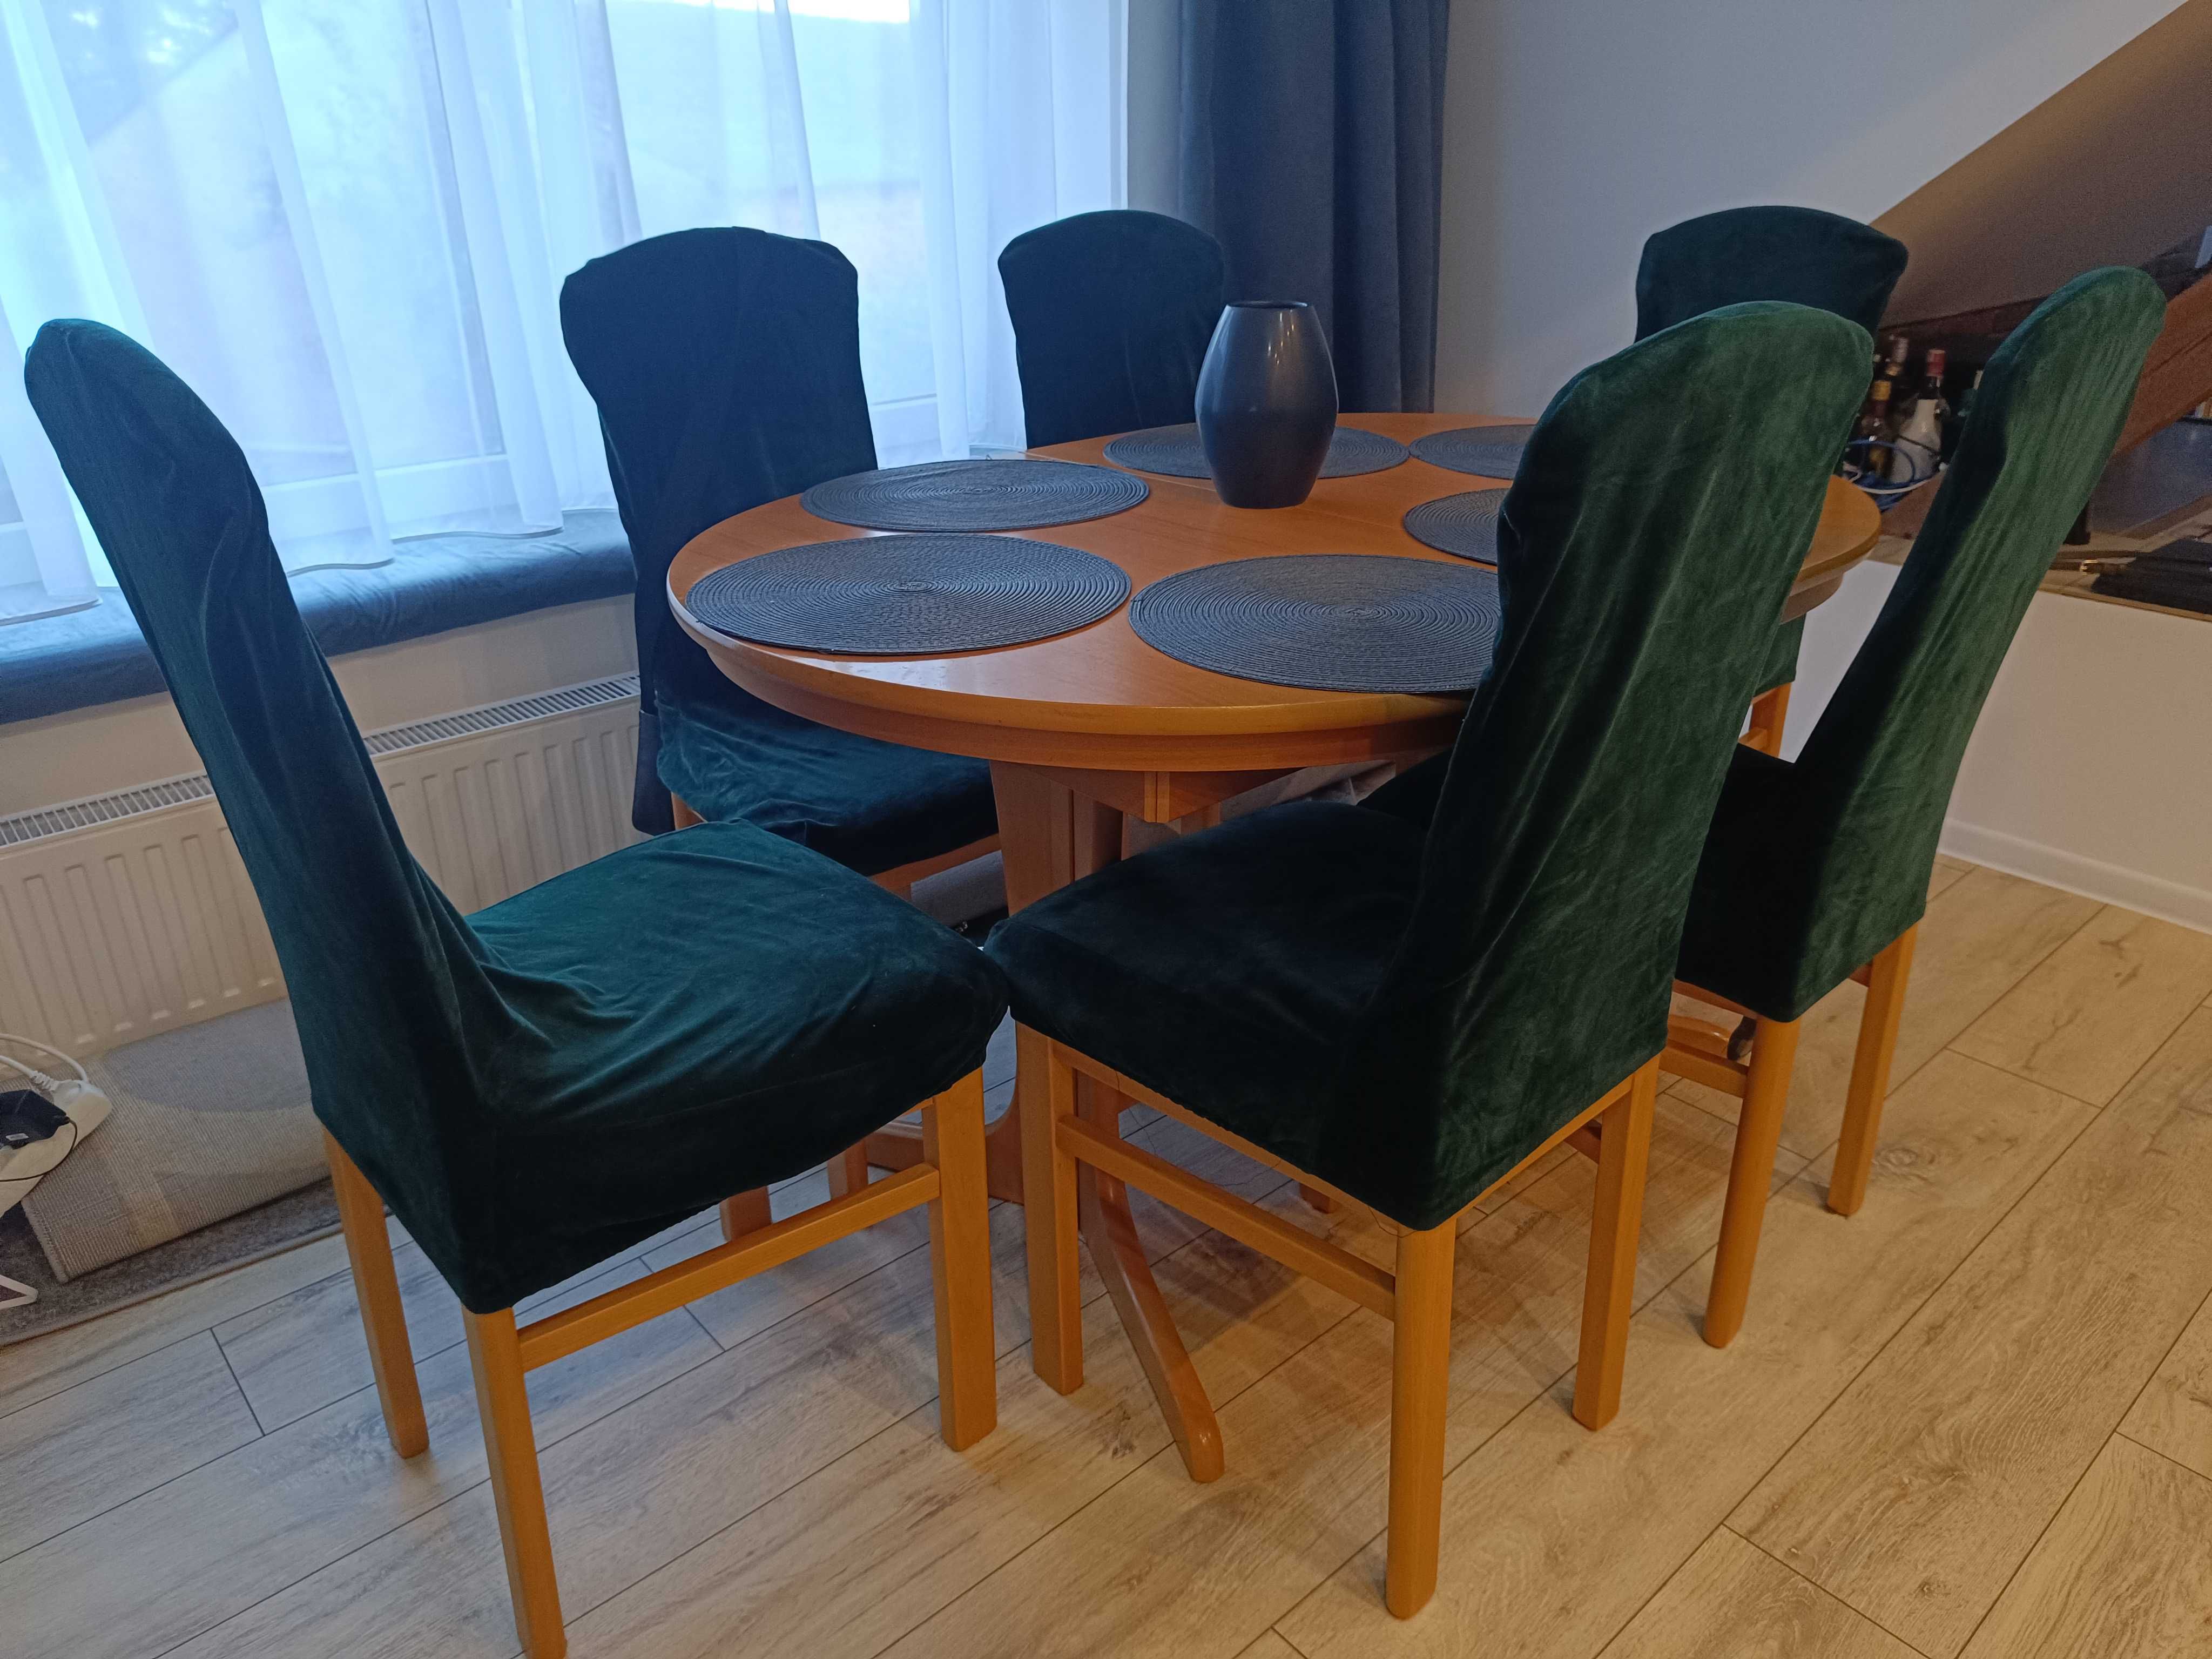 Komplet mebli zestaw krzesła stół 6 krzeseł owalny okrągły rozkładan